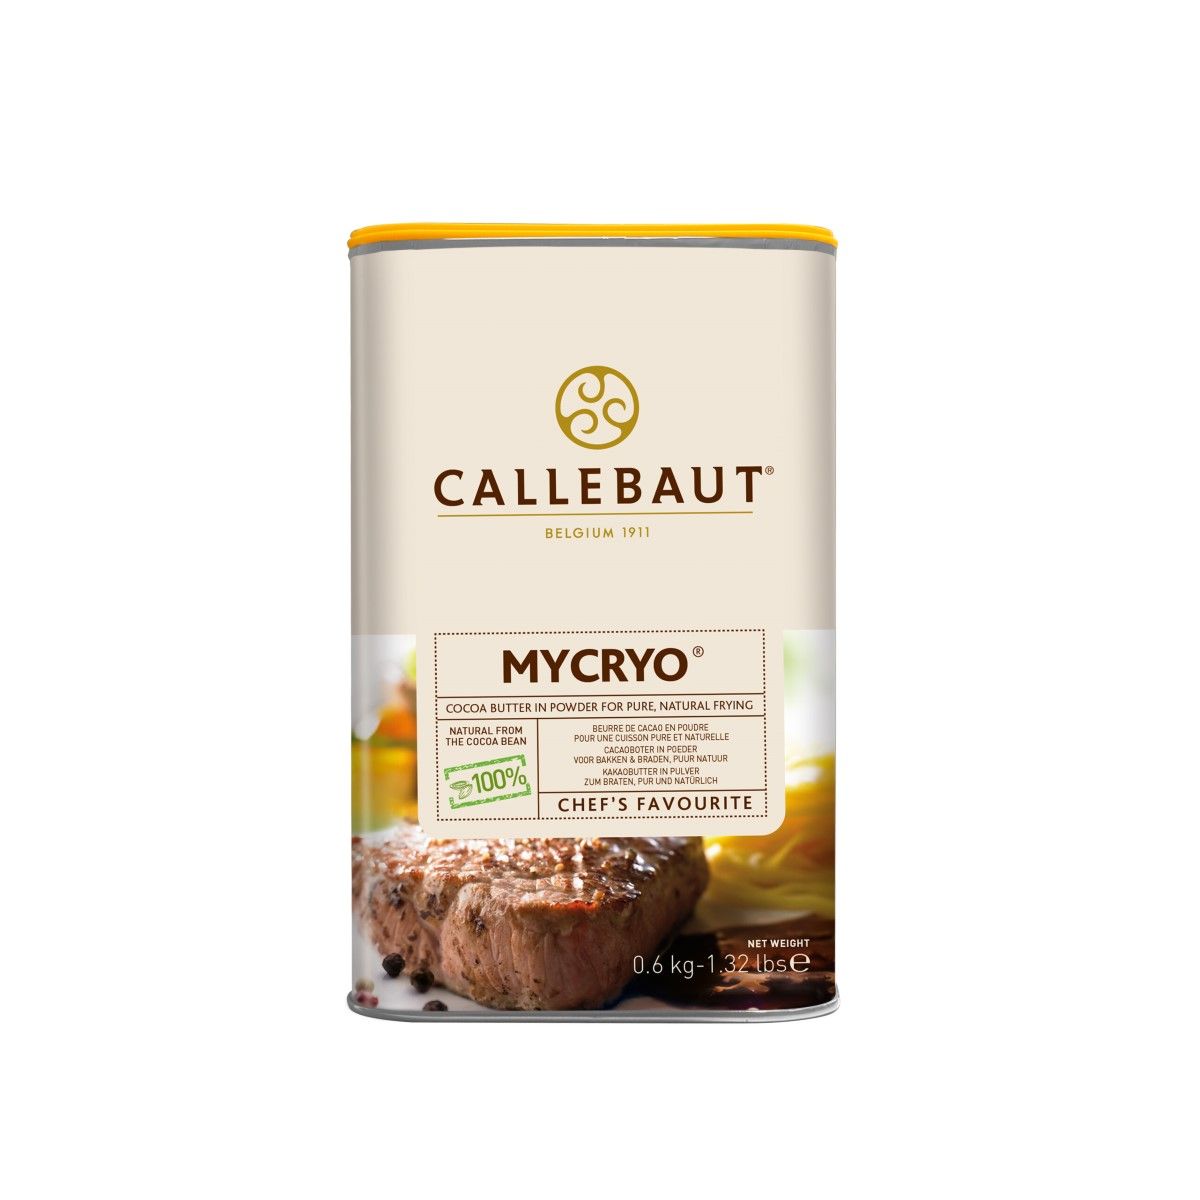 Kakaobutter Callebaut Mycryo 600g MHD 25/5/23